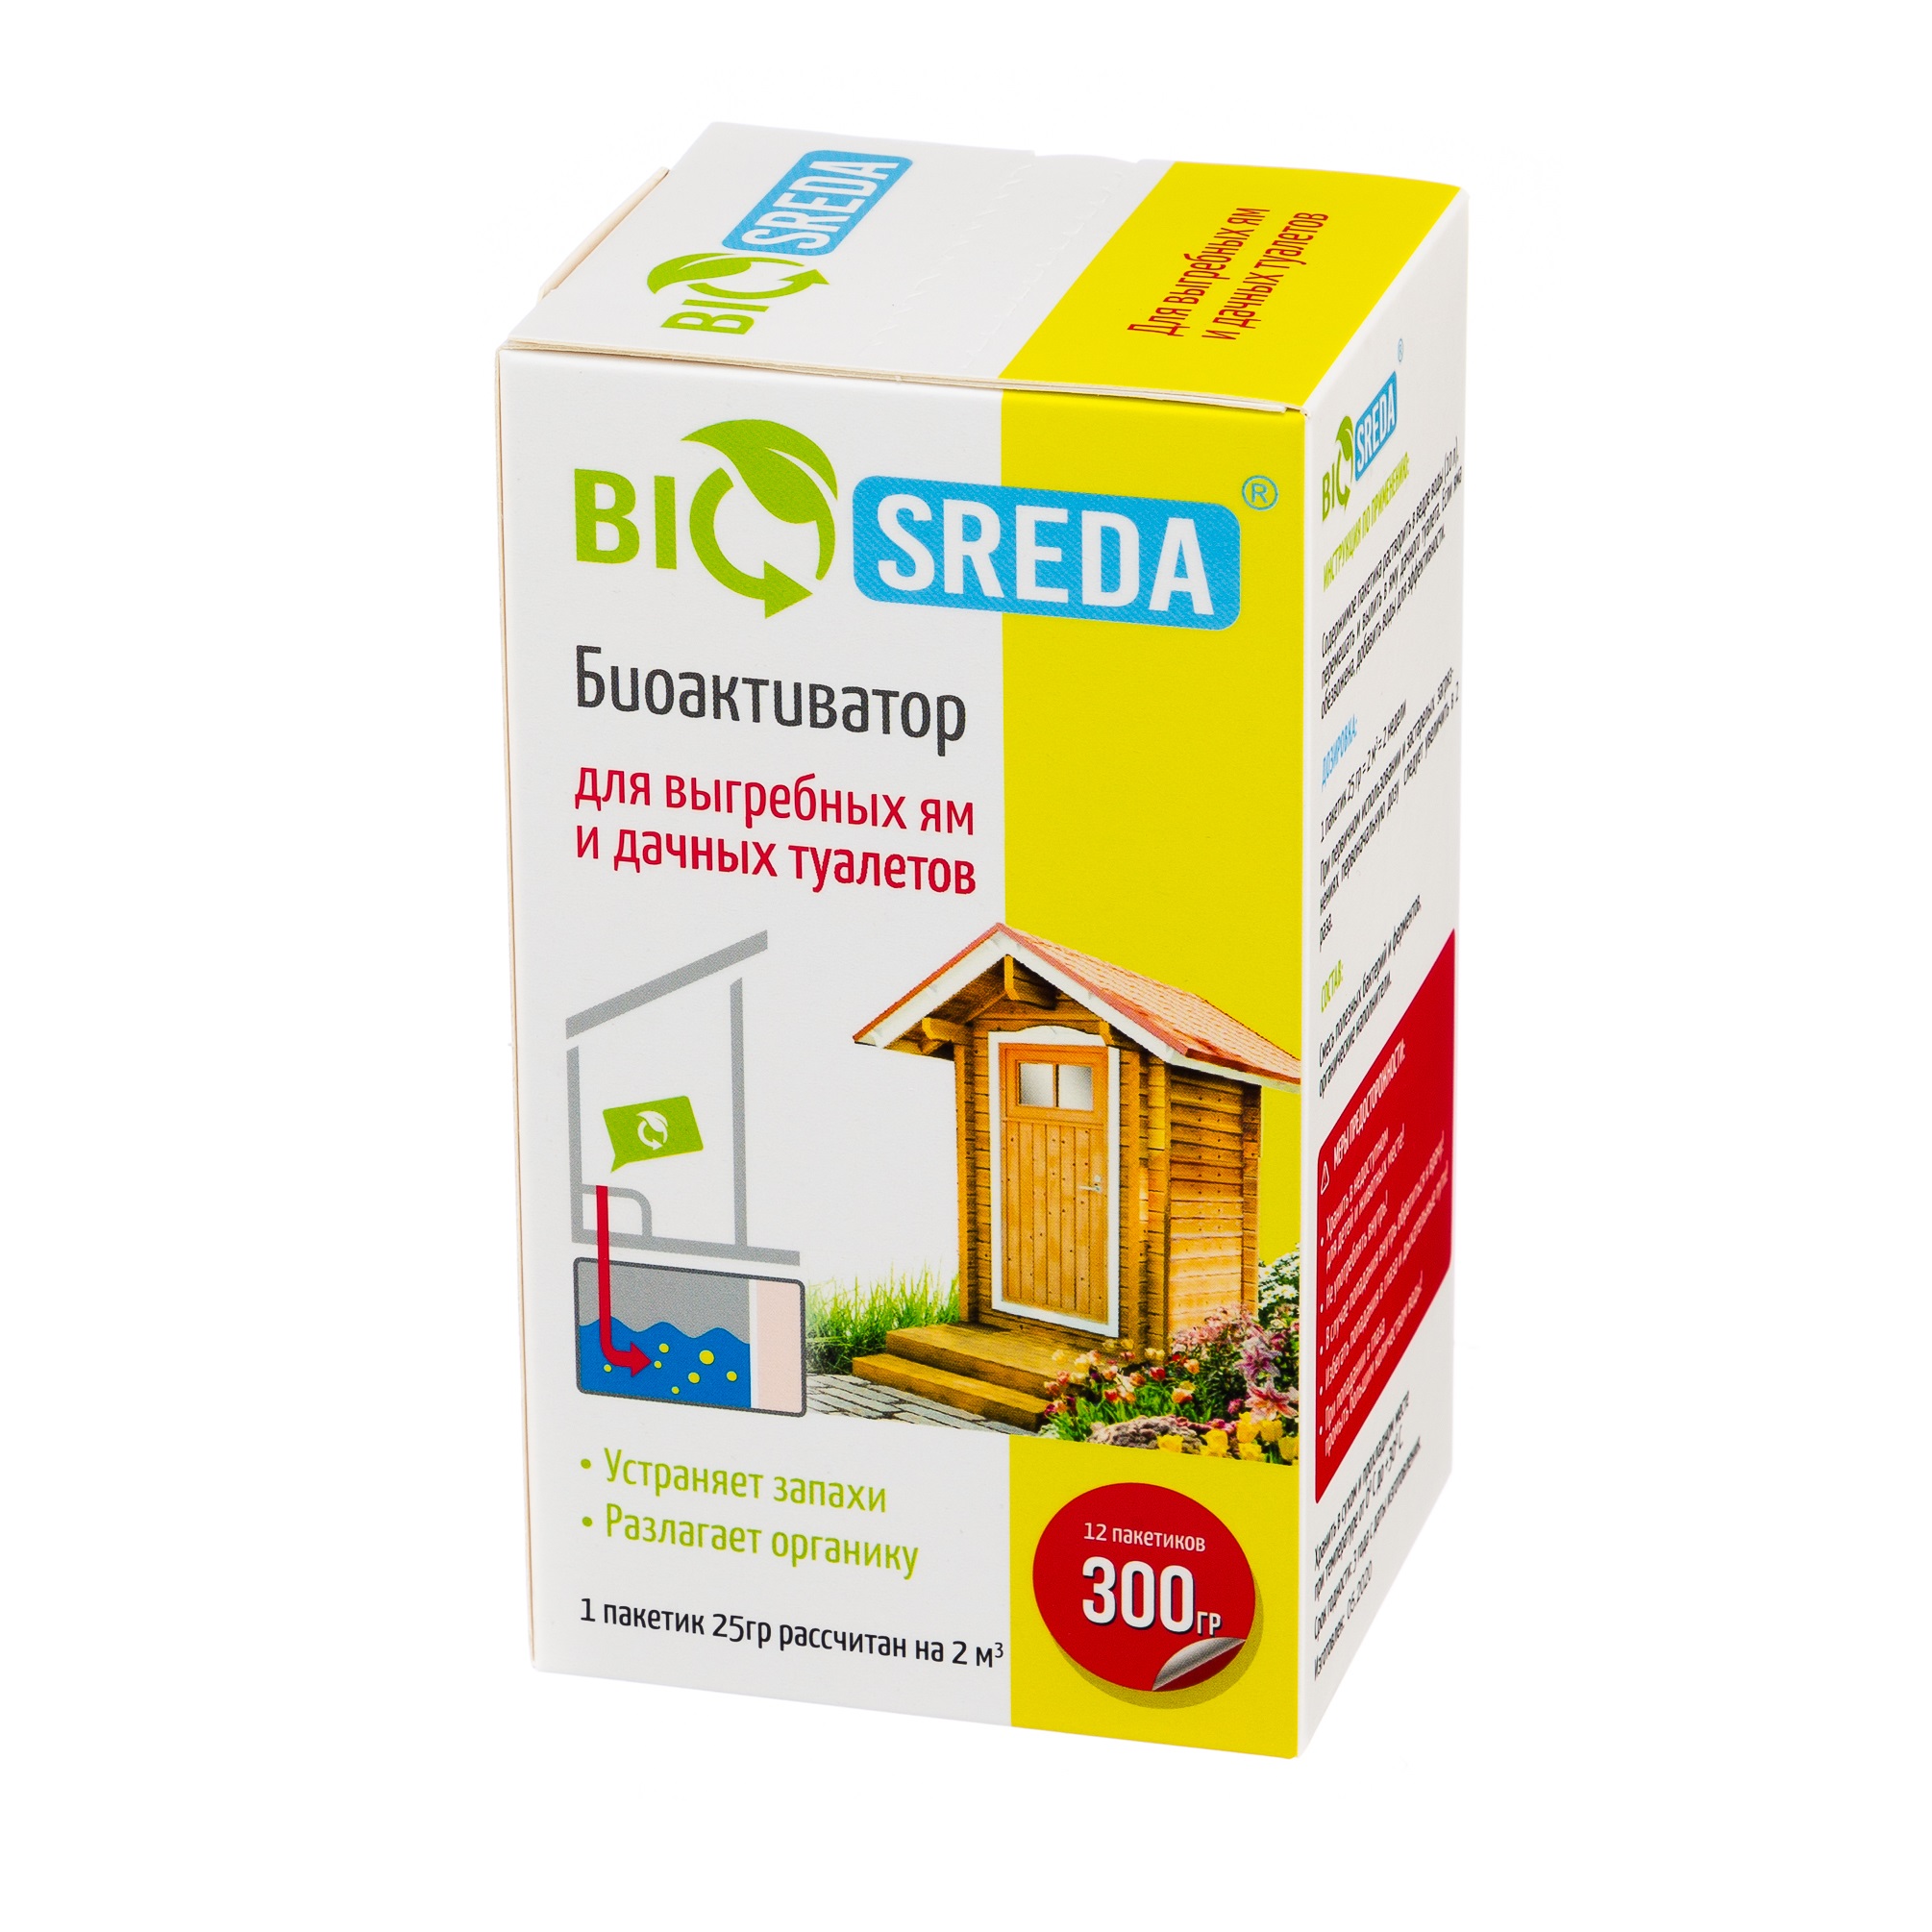 Биоактиватор Biosreda для выгребных ям и дачных туалетов, 300 гр 12 пакетов